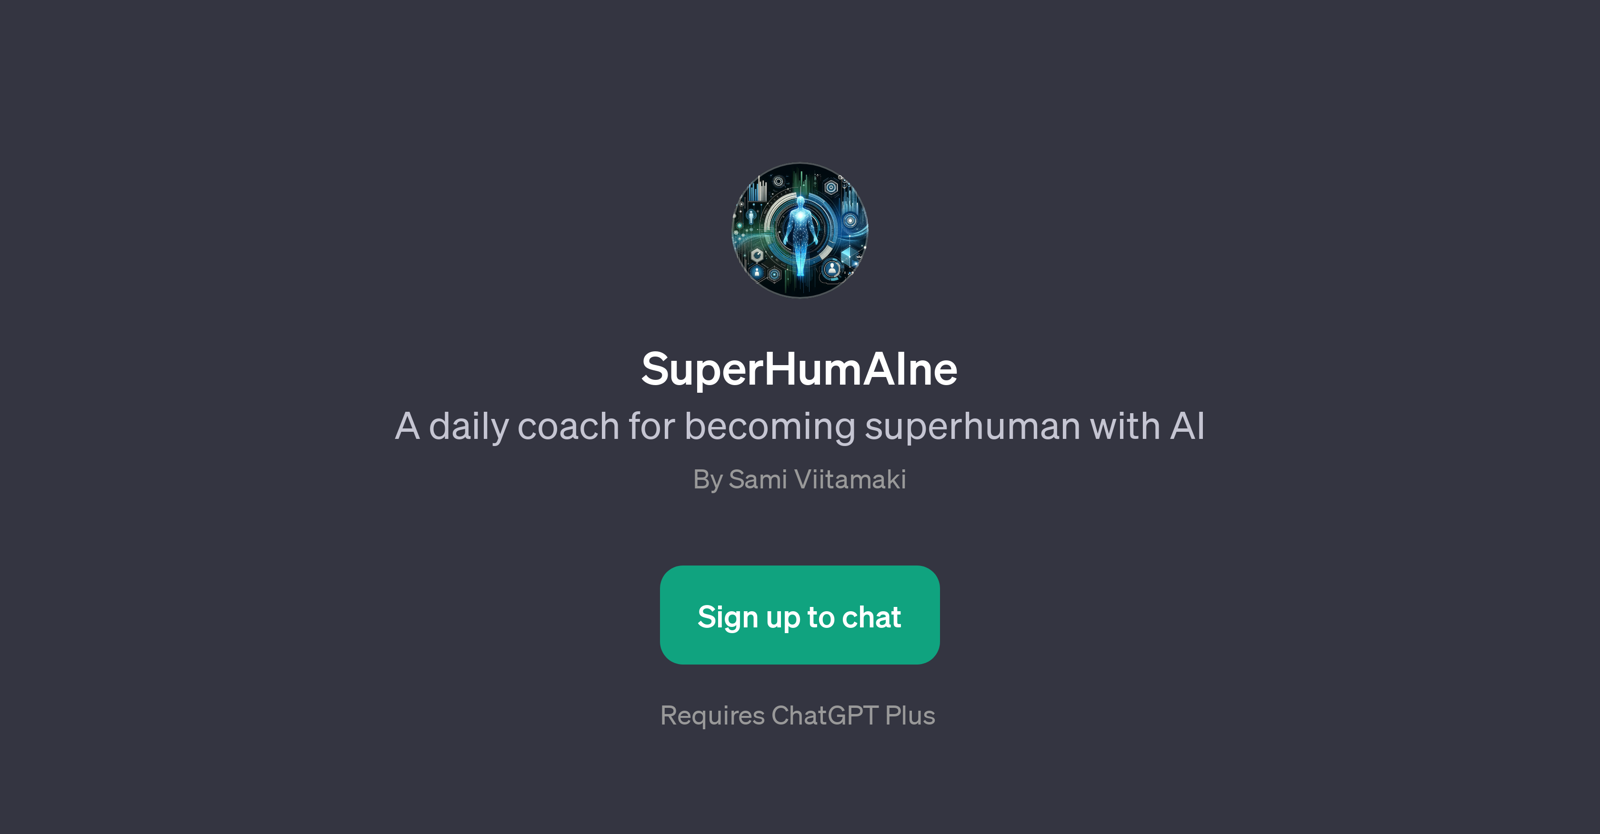 SuperHumAIne website